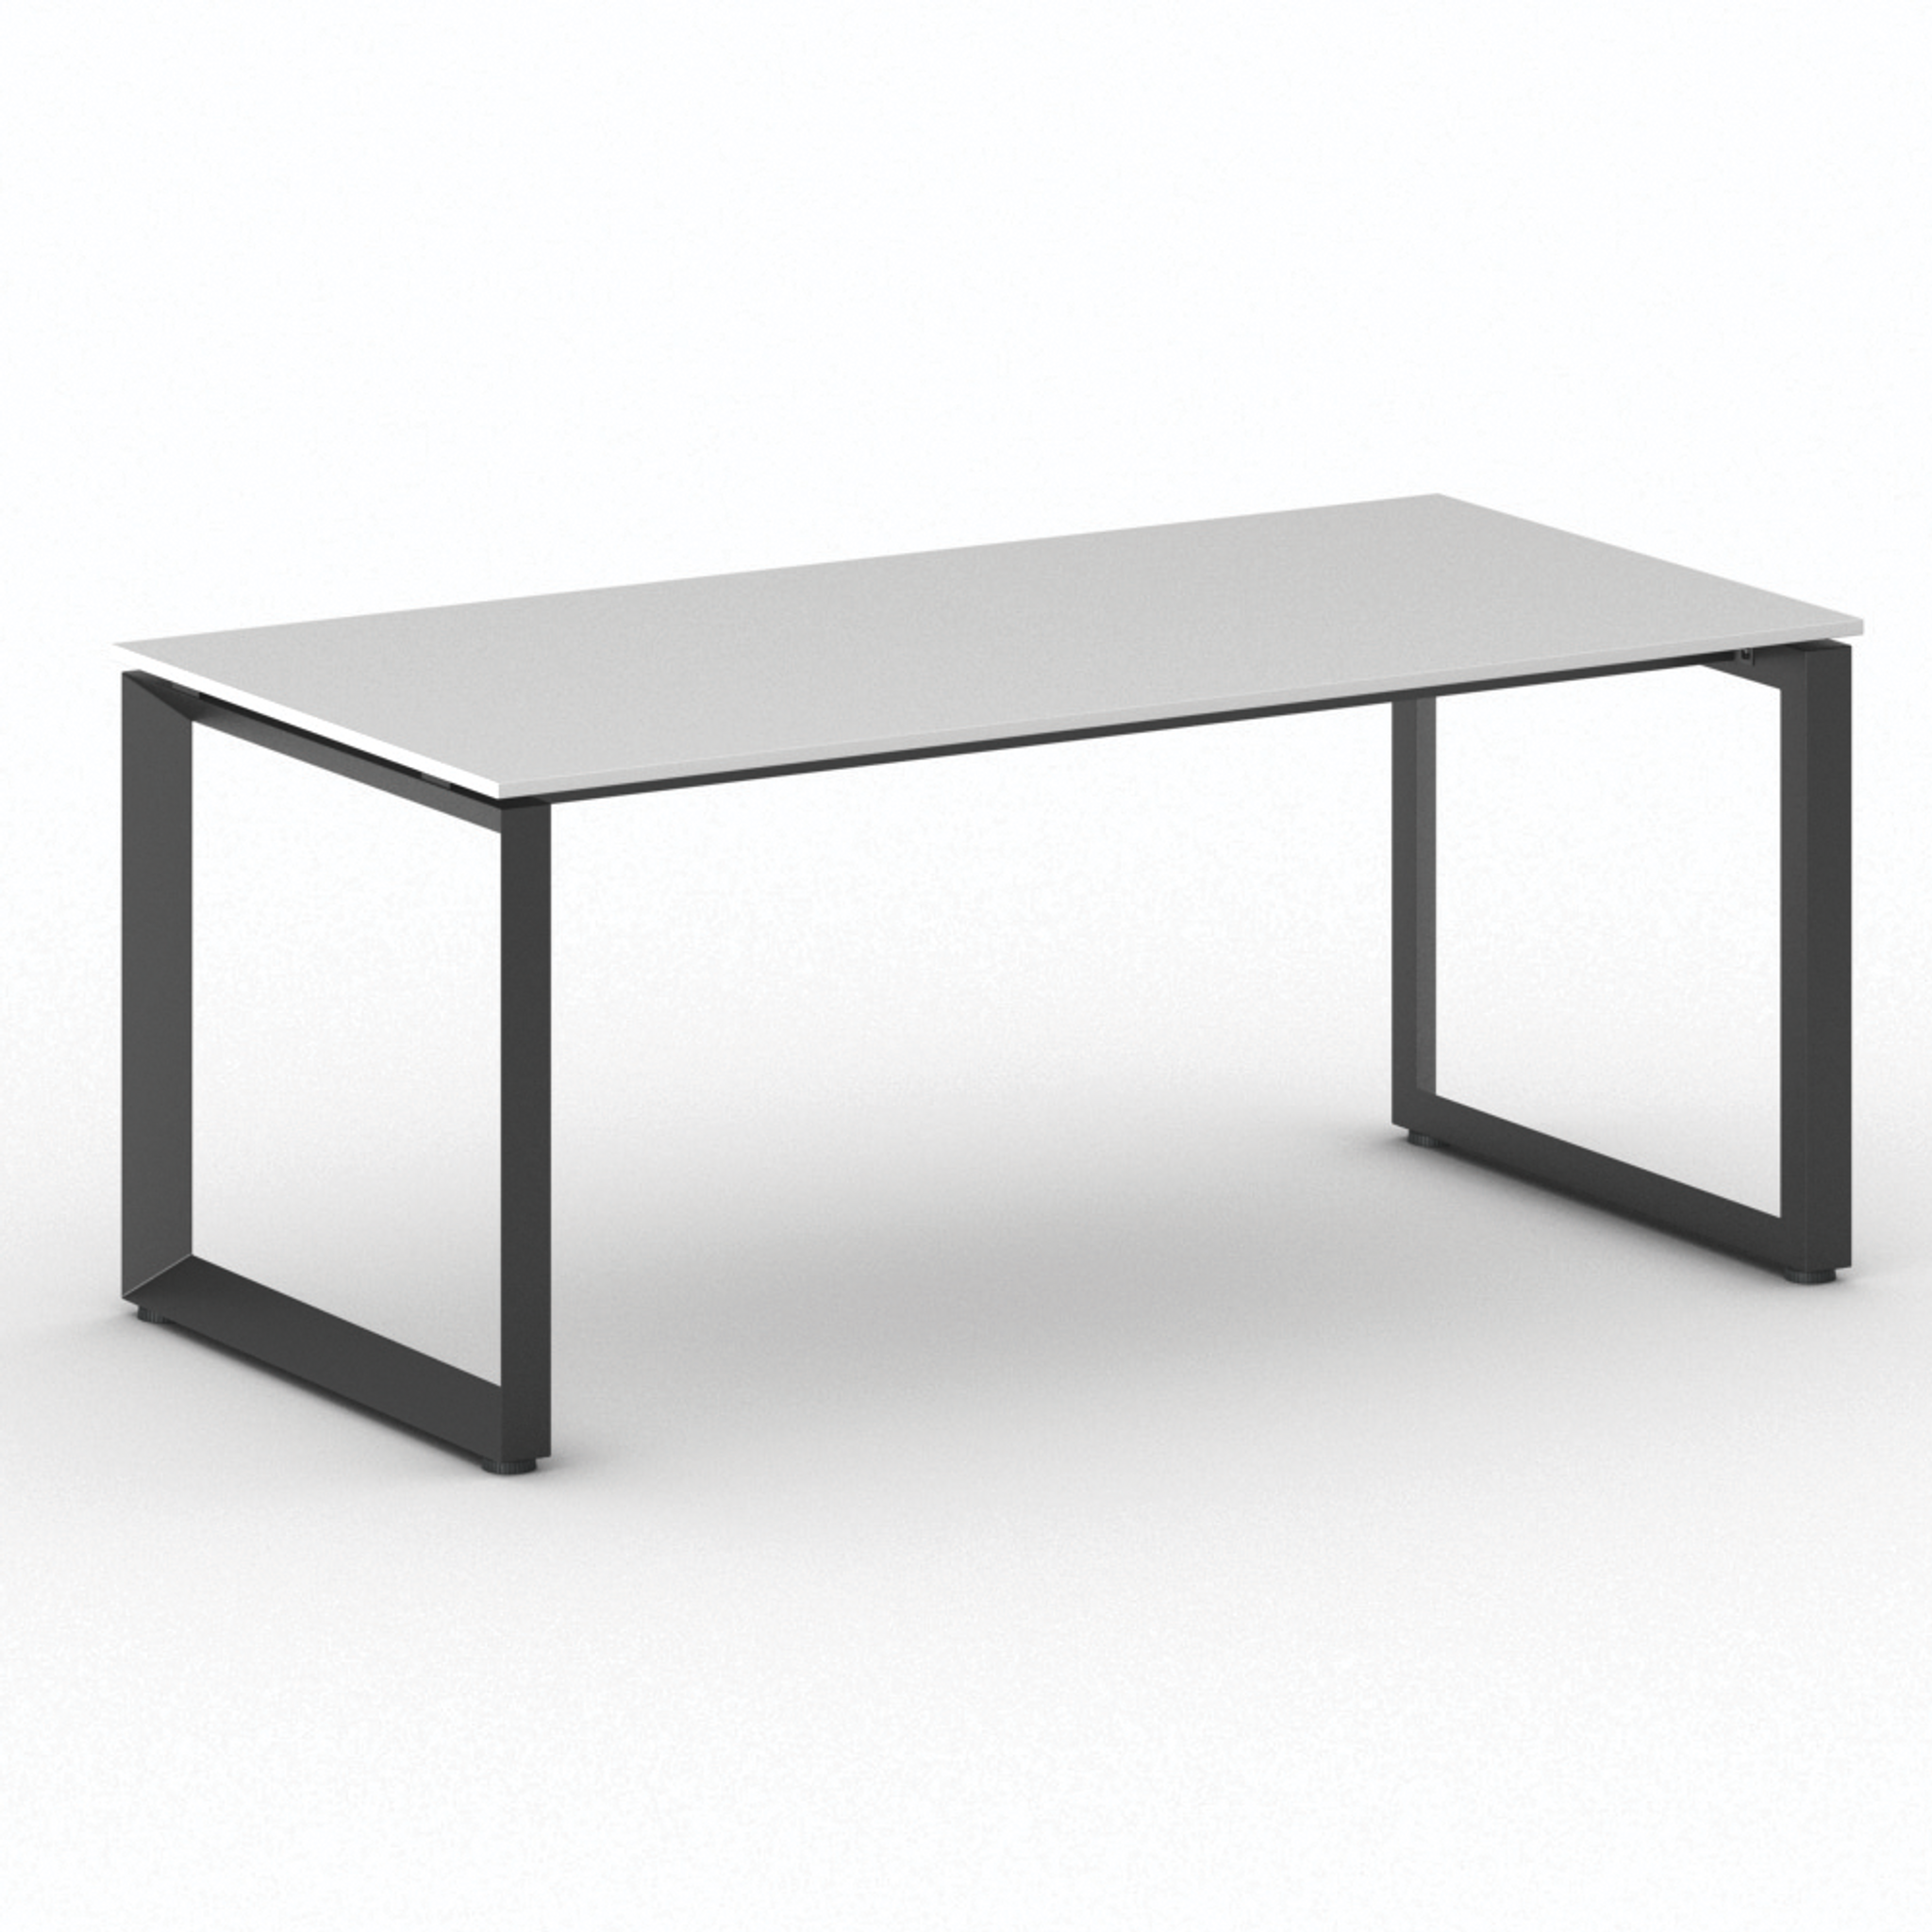 Konferenztisch PRIMO INSPIRE 1800 x 900 mm, schwarzes Fußgestell, weiß